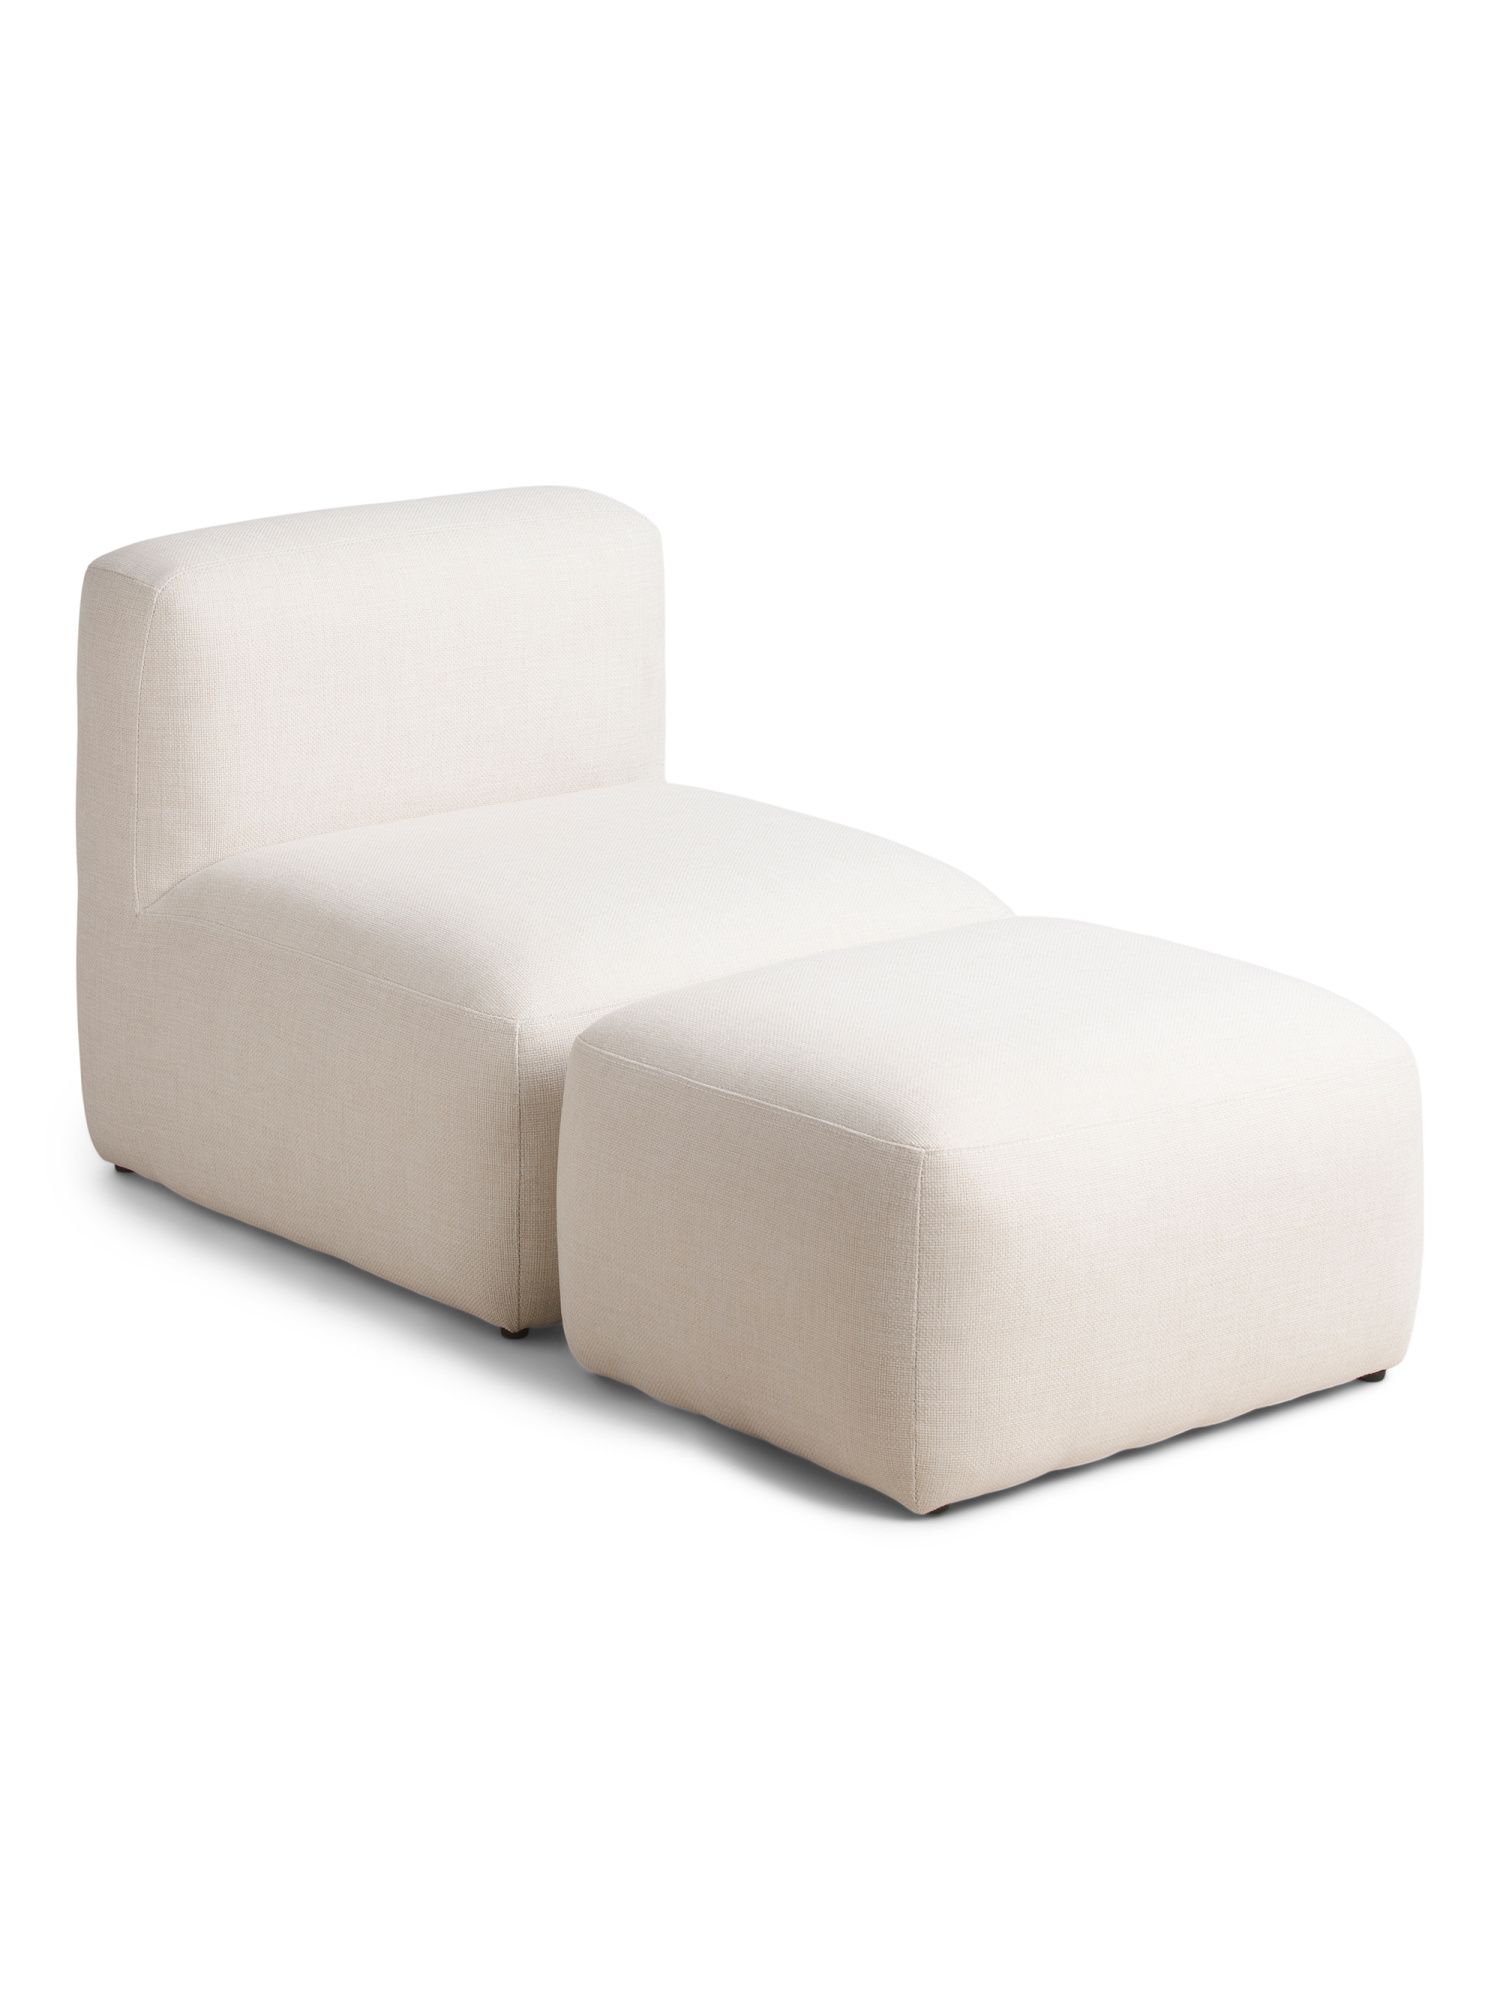 Outdoor Upholstered Chair And Ottoman Set | Furniture & Lighting | Marshalls | Marshalls